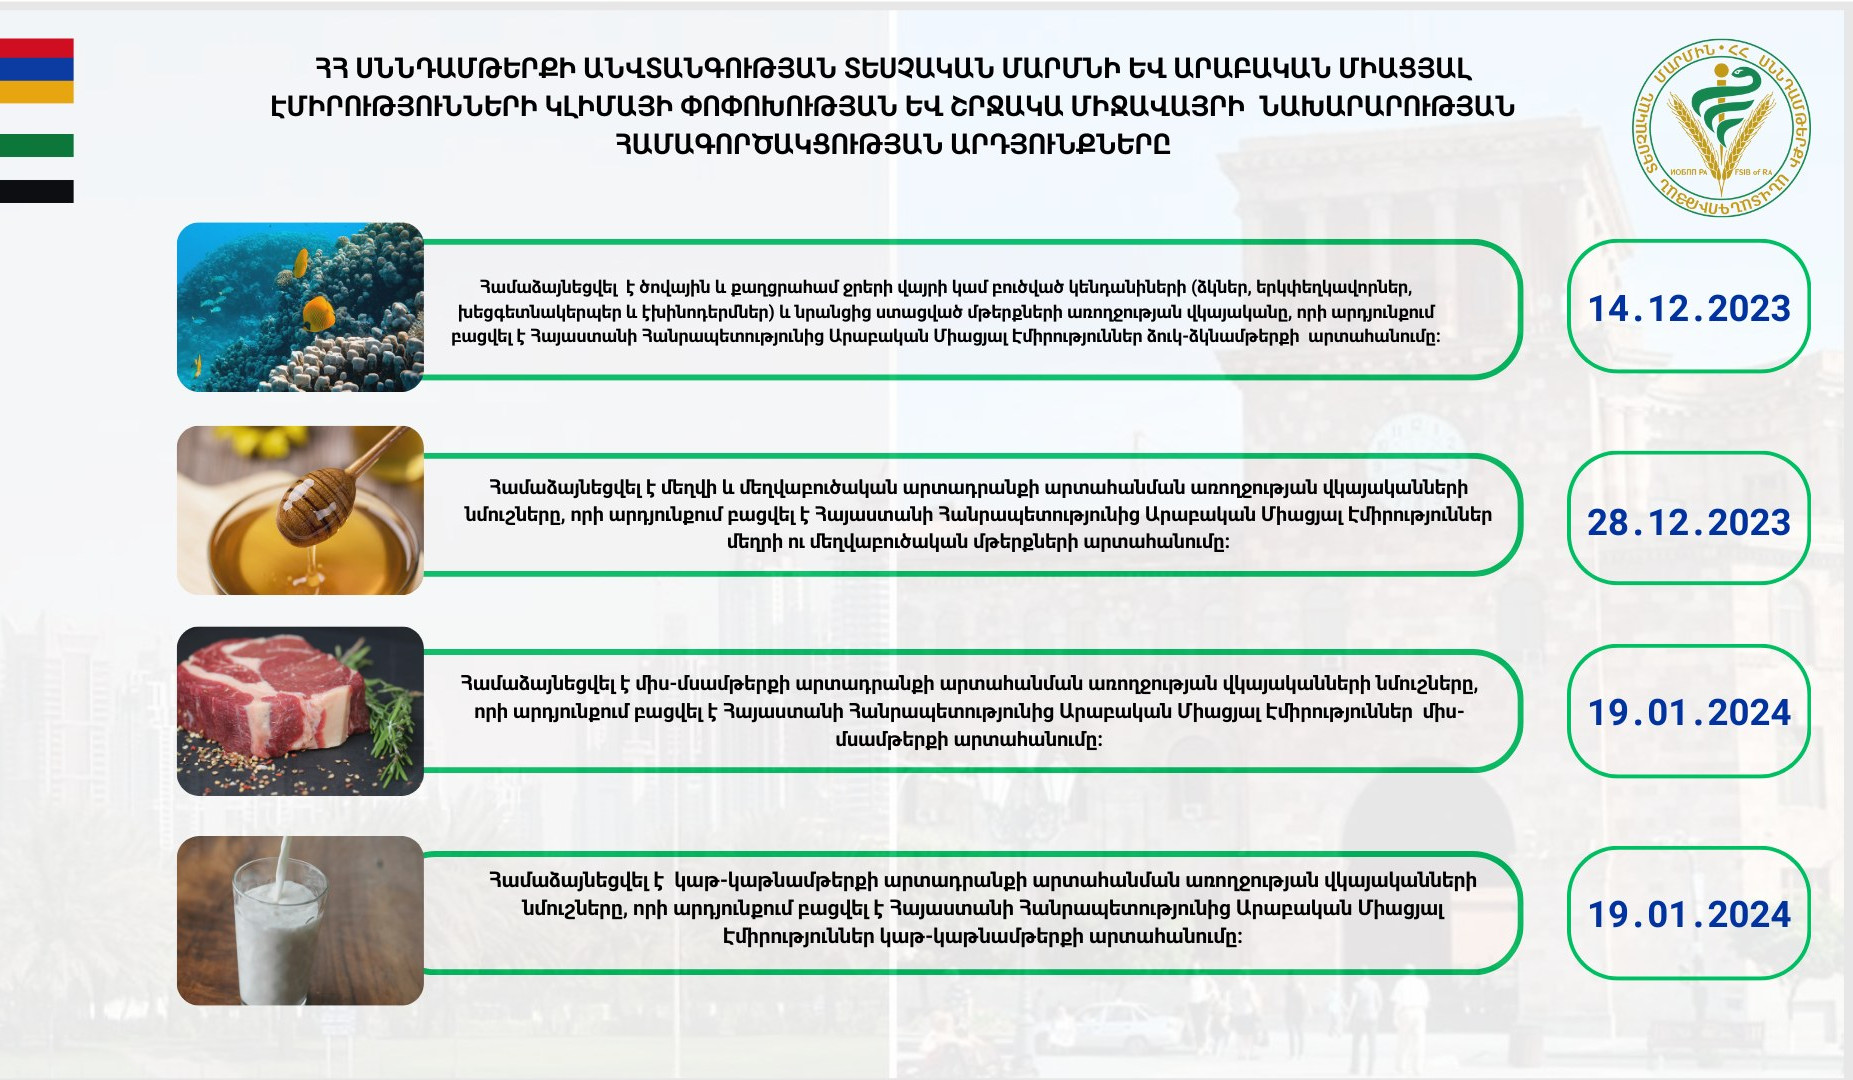 Հայաստանից ԱՄԷ կարող է արտահանվել ձուկ-ձկնամթերք, մեղր և մեղվաբուծական արտադրանք, կաթ-կաթնամթերք և միս-մսամթերք